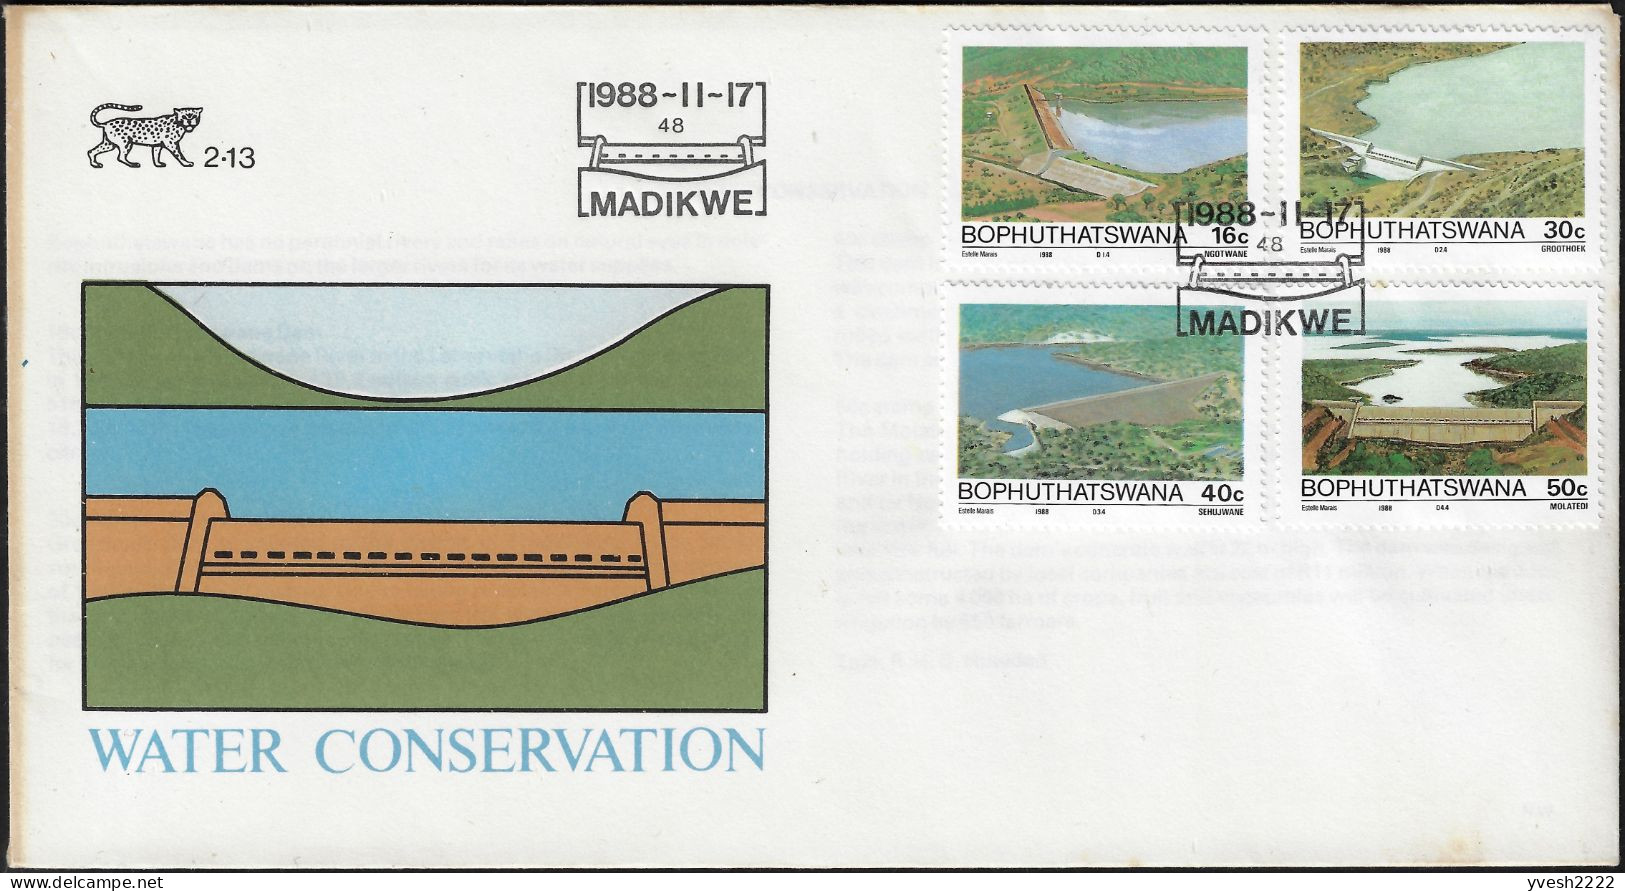 Bophuthatswana 1988 Y&T 210 à 213 Sur FDC. Conservation De L'eau, Barrages Et Réserves D'eau - Eau